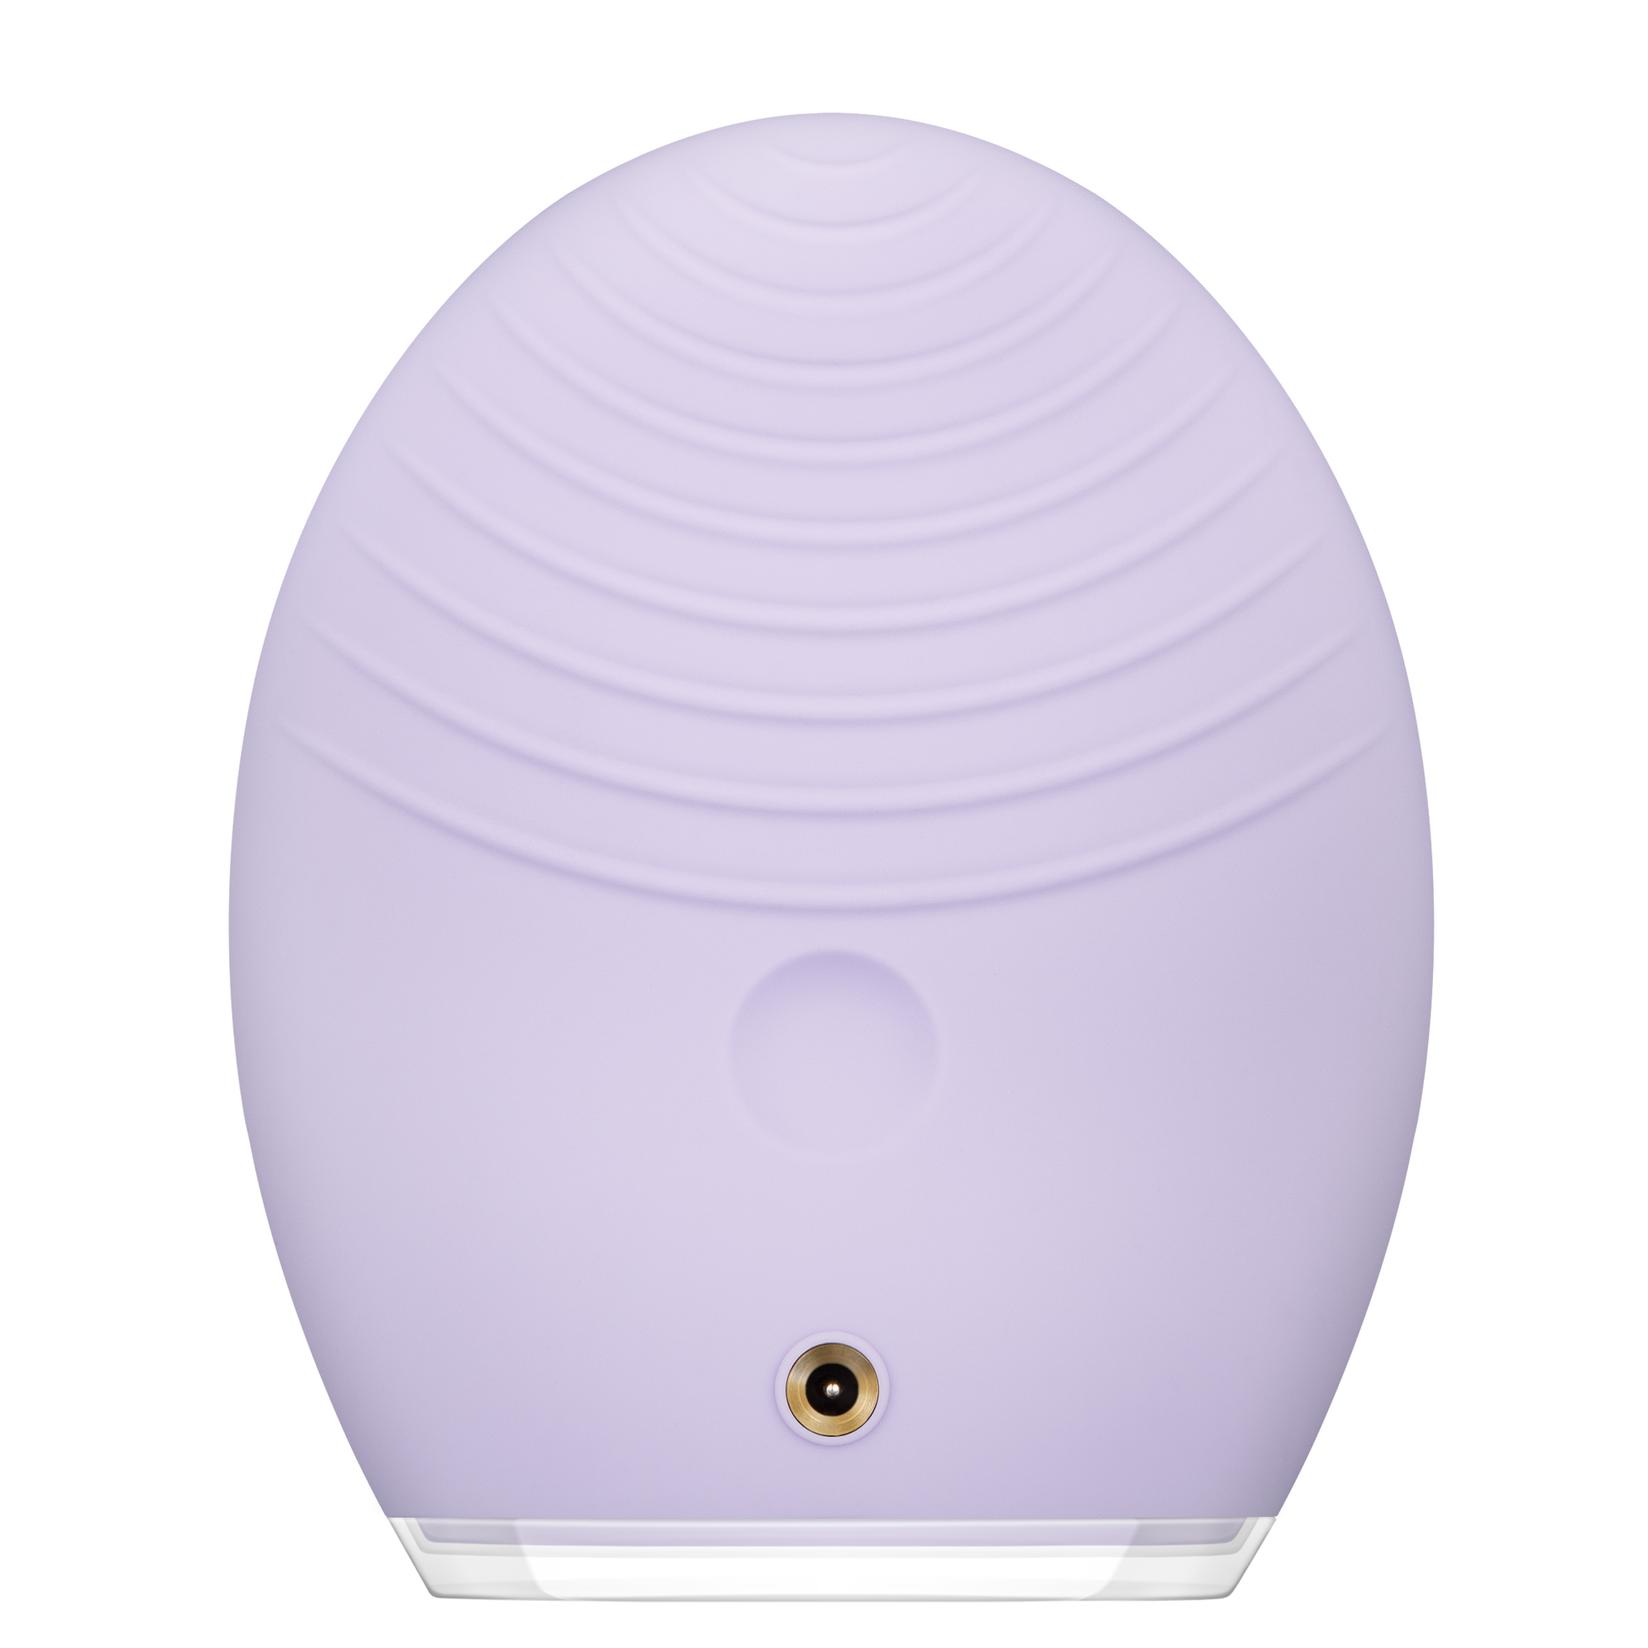 Selected image for FOREO LUNA 3 pametni sonični uređaj i masažer za čišćenje lica za osetljivu kožu